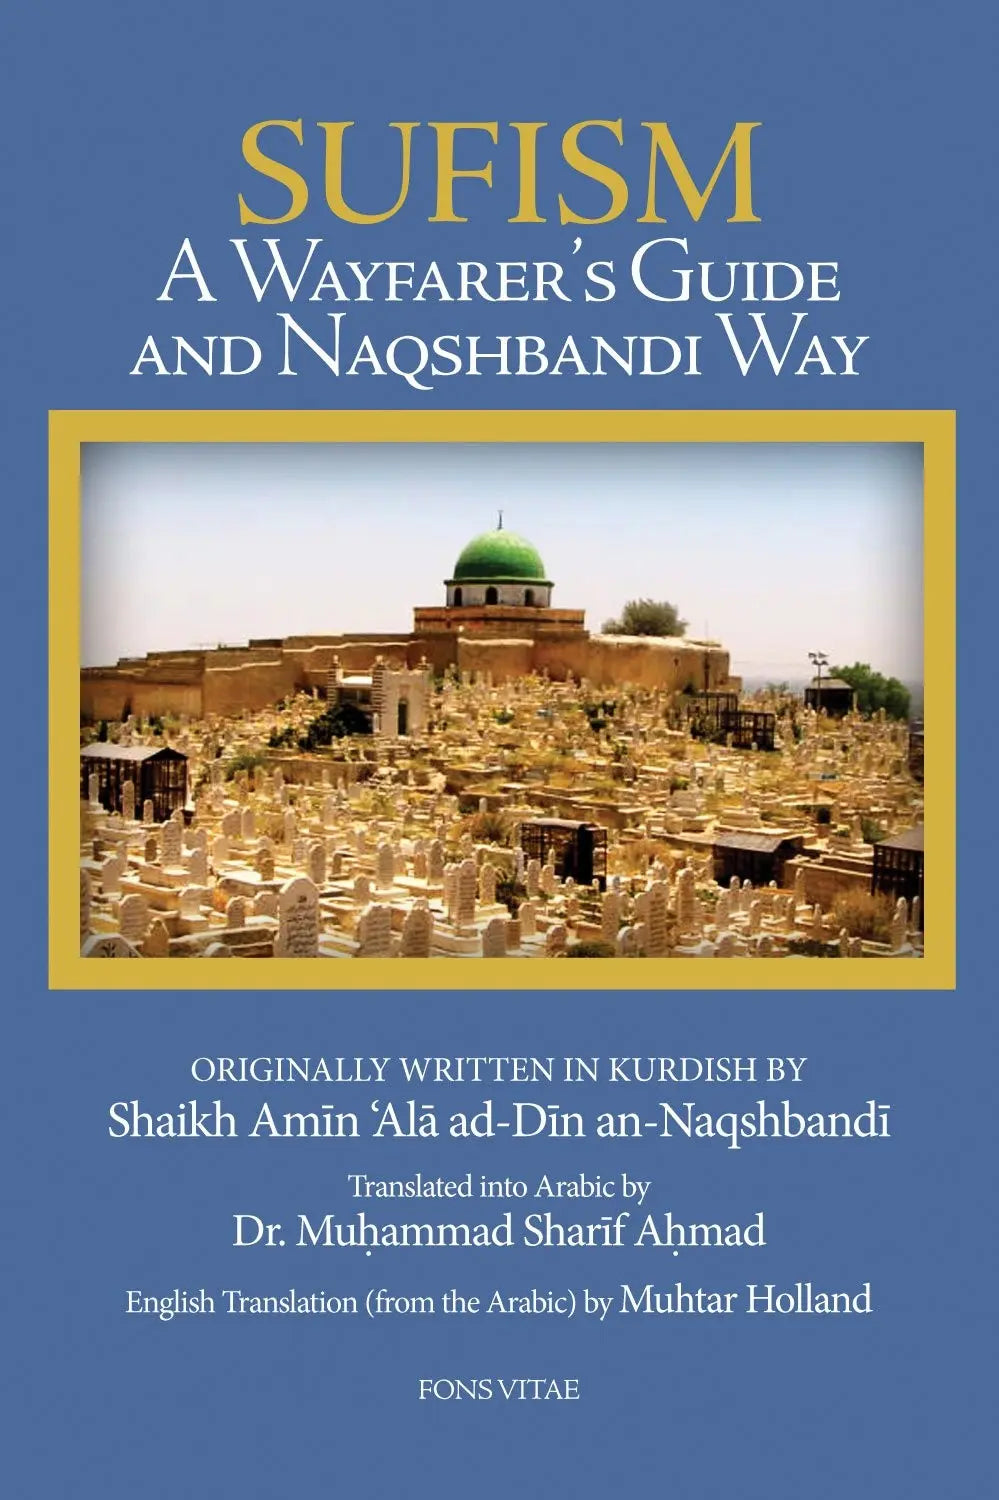 Sufism: A Wayfarer’s Guide to the Naqshbandi Way